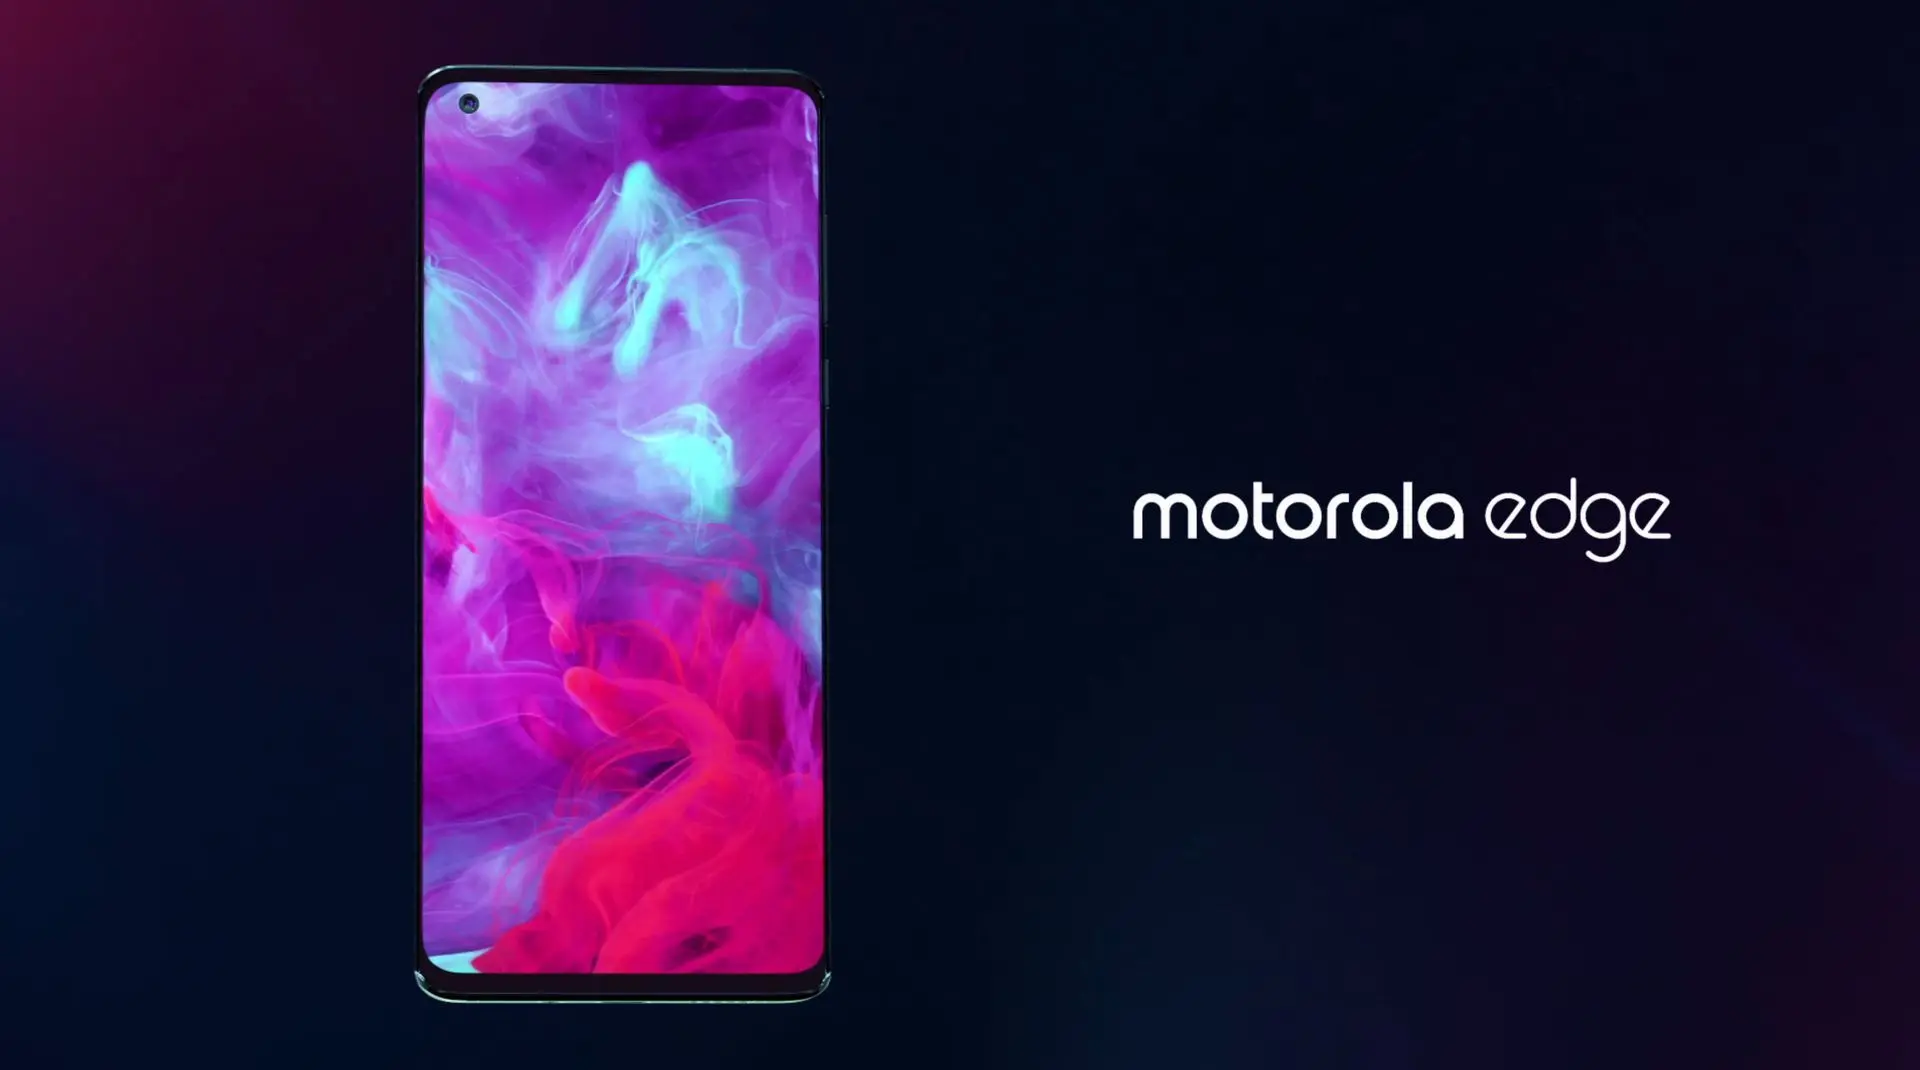 Motorola Edge Launched